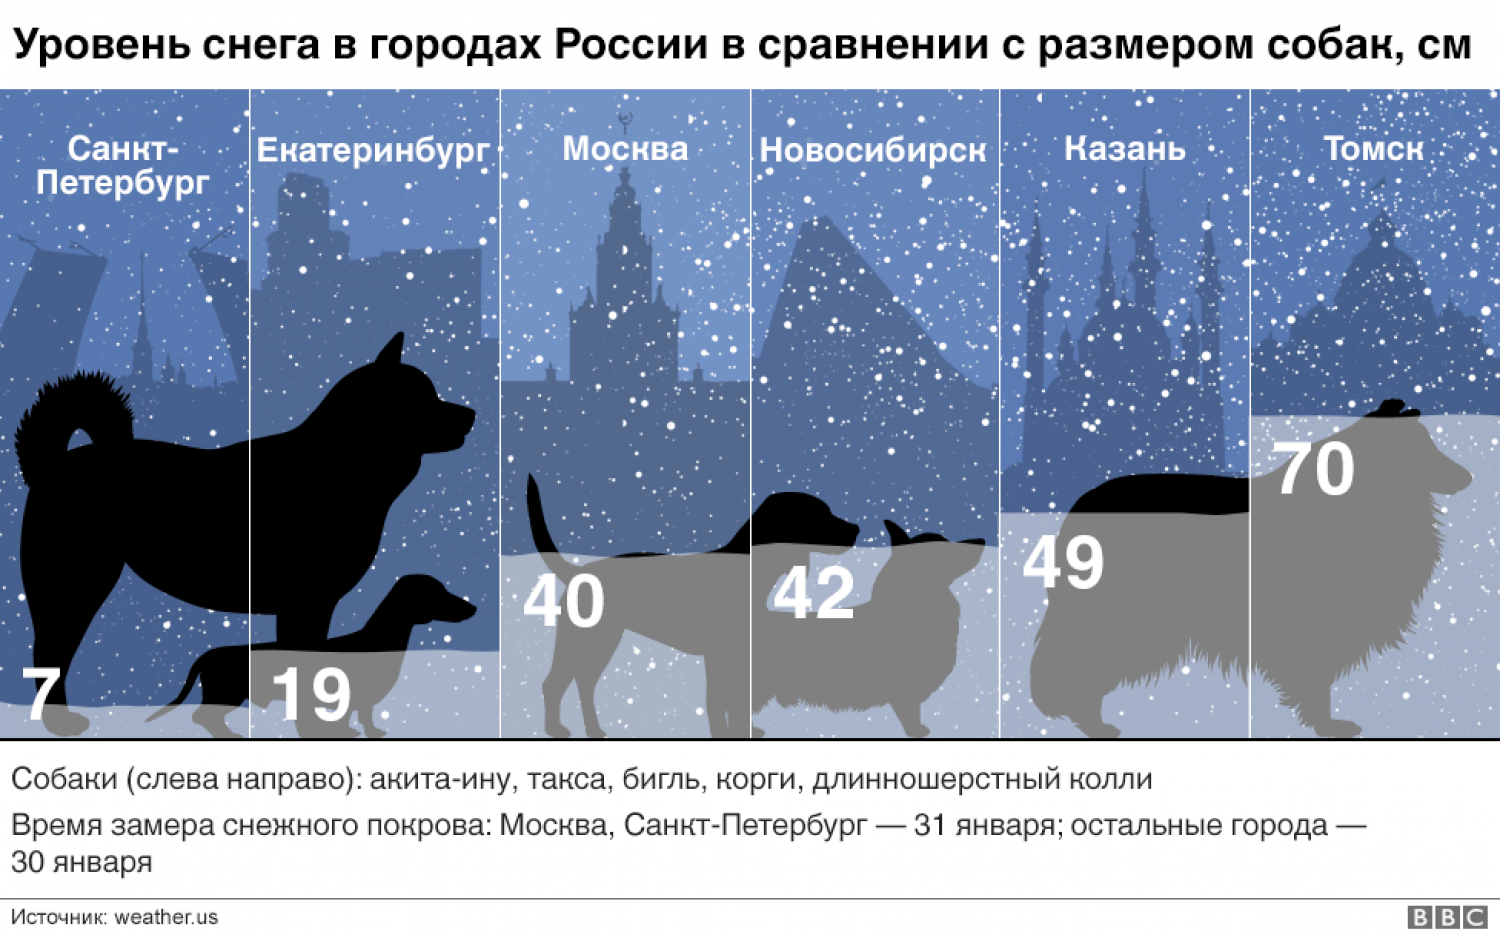 Размер московской. Снег размер. Сравнительные Размеры собак. Сравнительные Размеры городов. Сравнение размеров городов России.